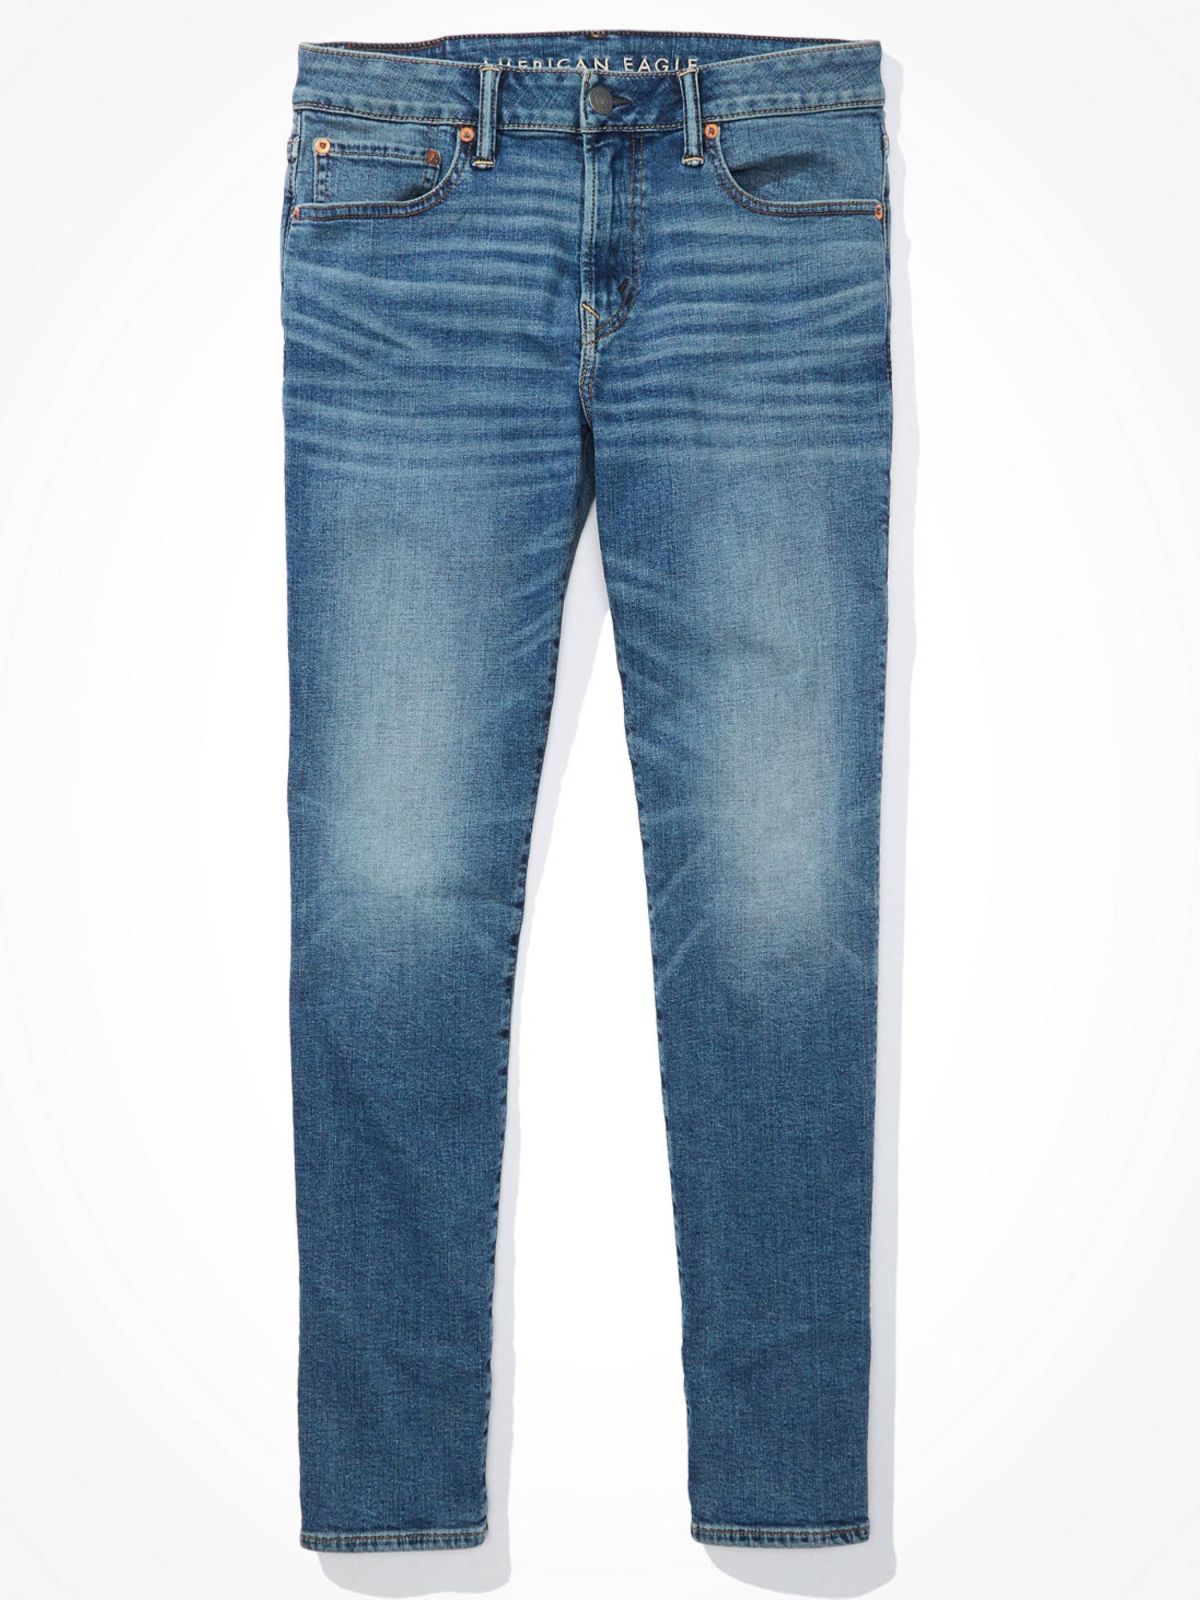  ג'ינס ארוך בשטיפה בהירה בגזרת Slim Straight של AMERICAN EAGLE